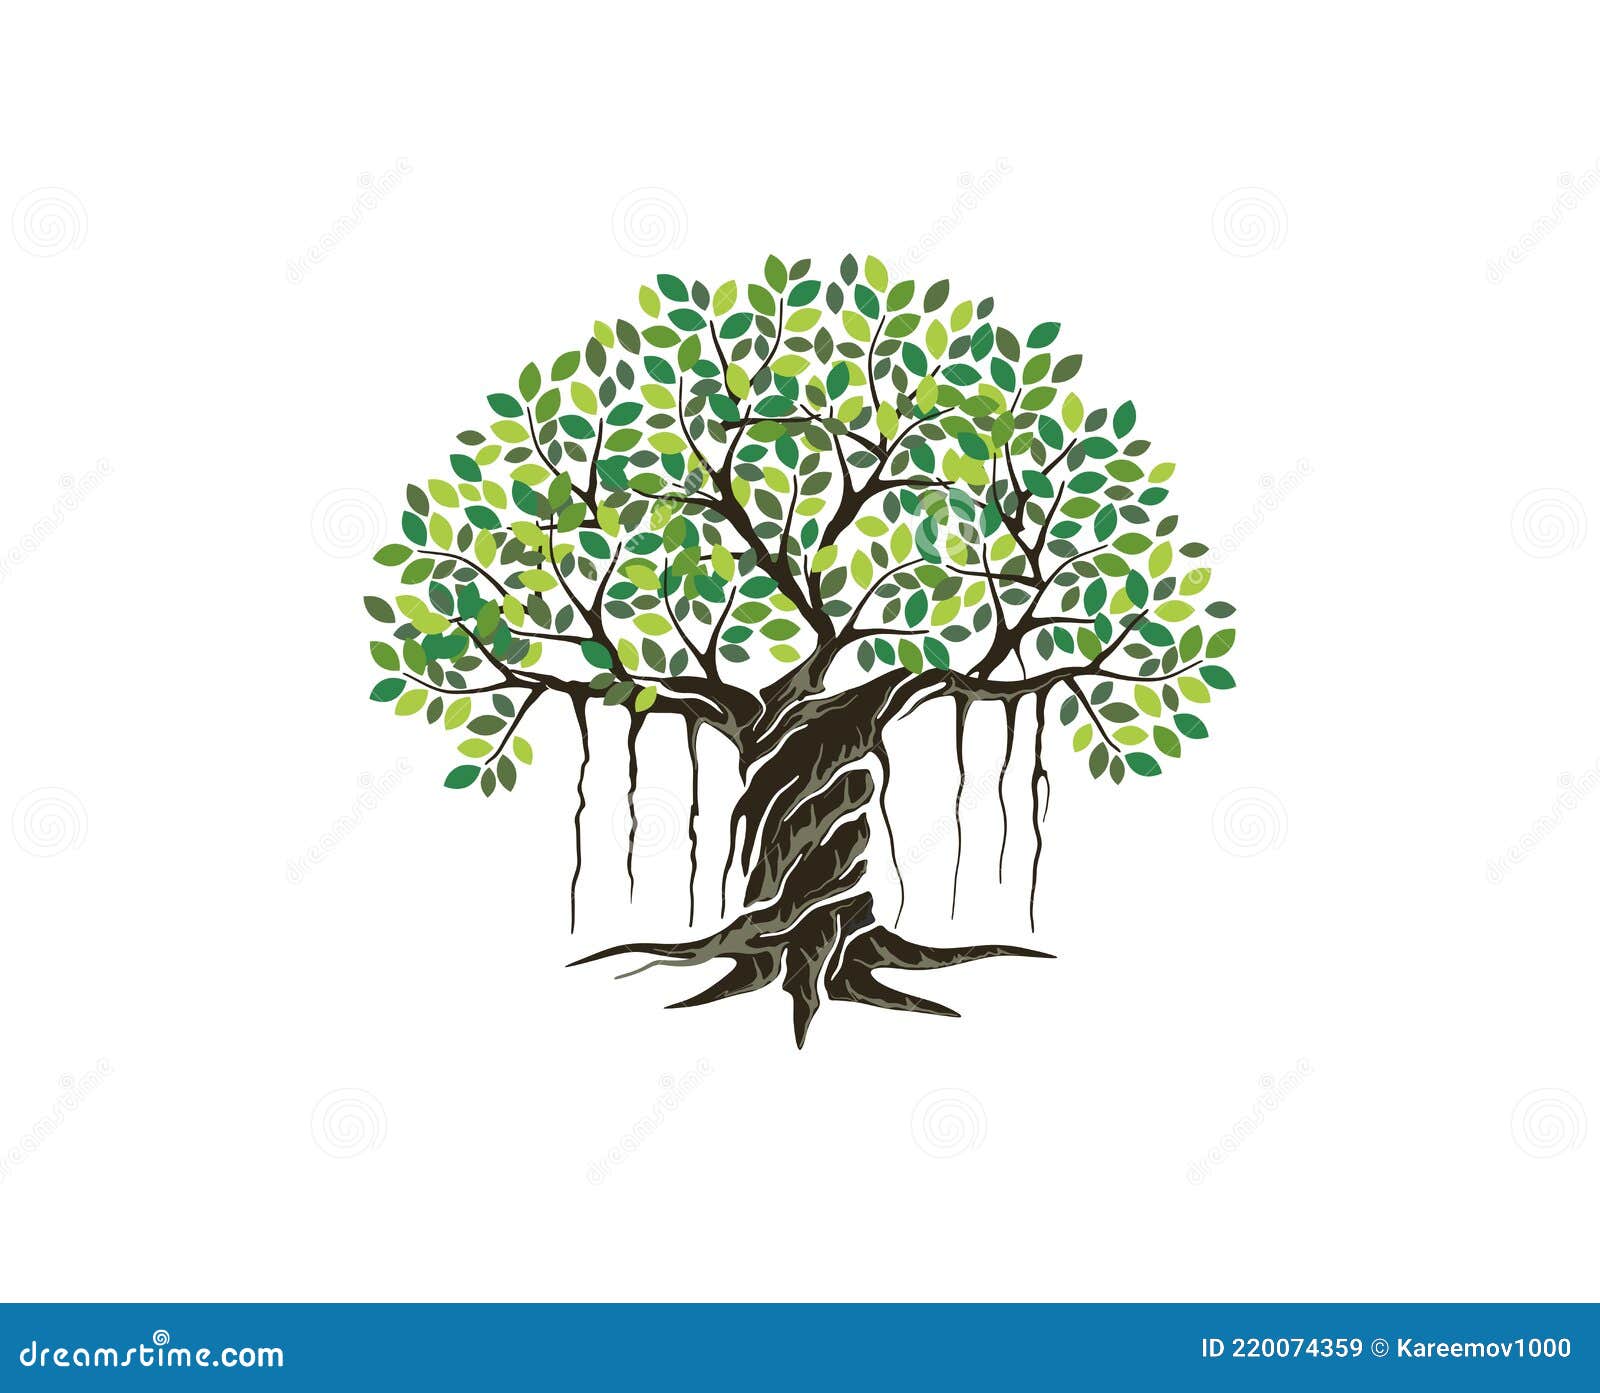 banyan tree logo 